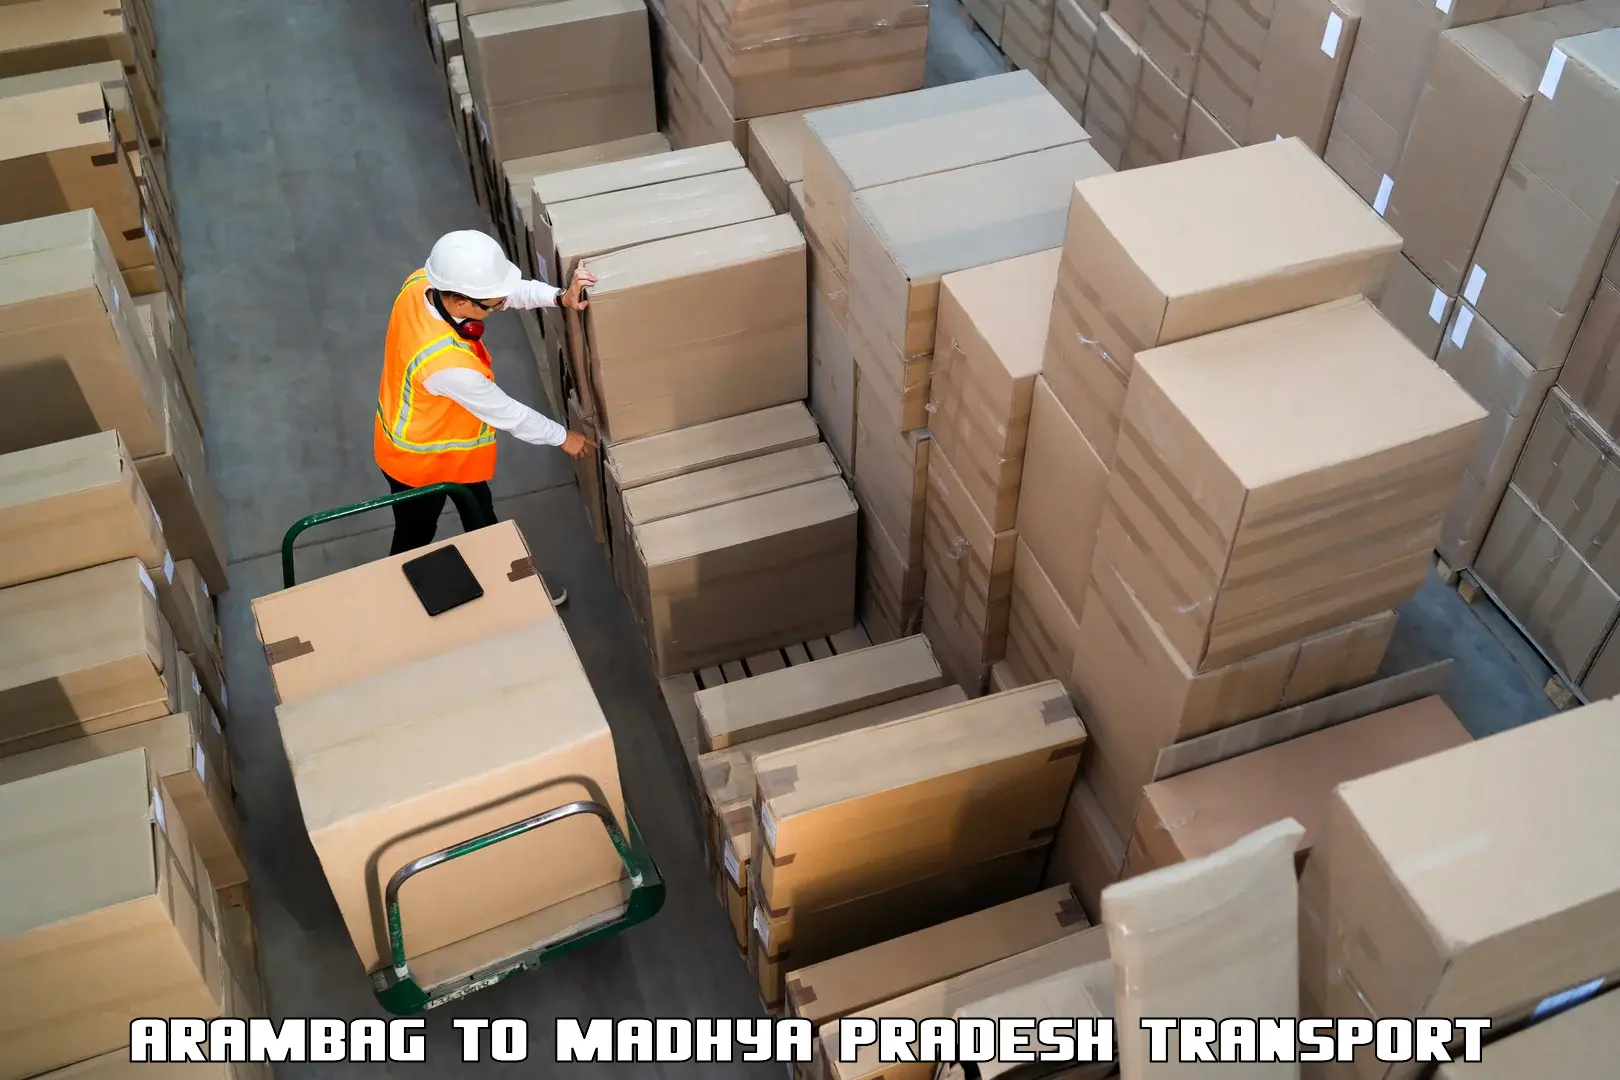 Furniture transport service Arambag to Mundi